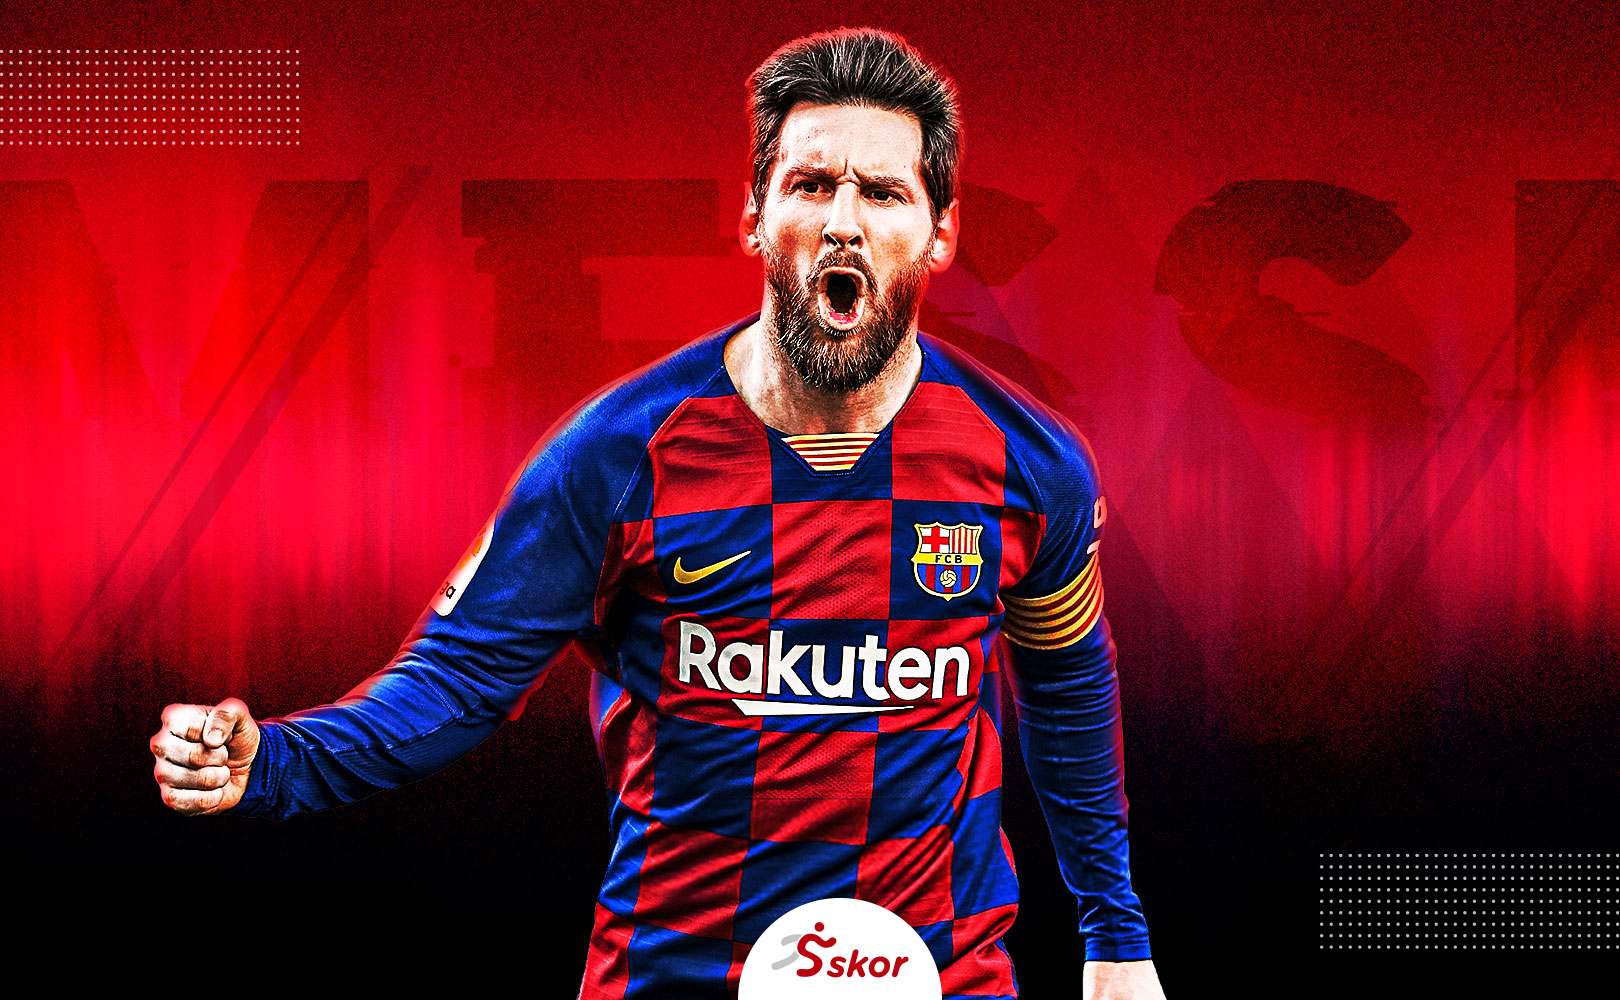 2 Klausul dalam Kontrak Lionel Messi: Bisa Hengkang dari Barcelona Sesuka Hati!